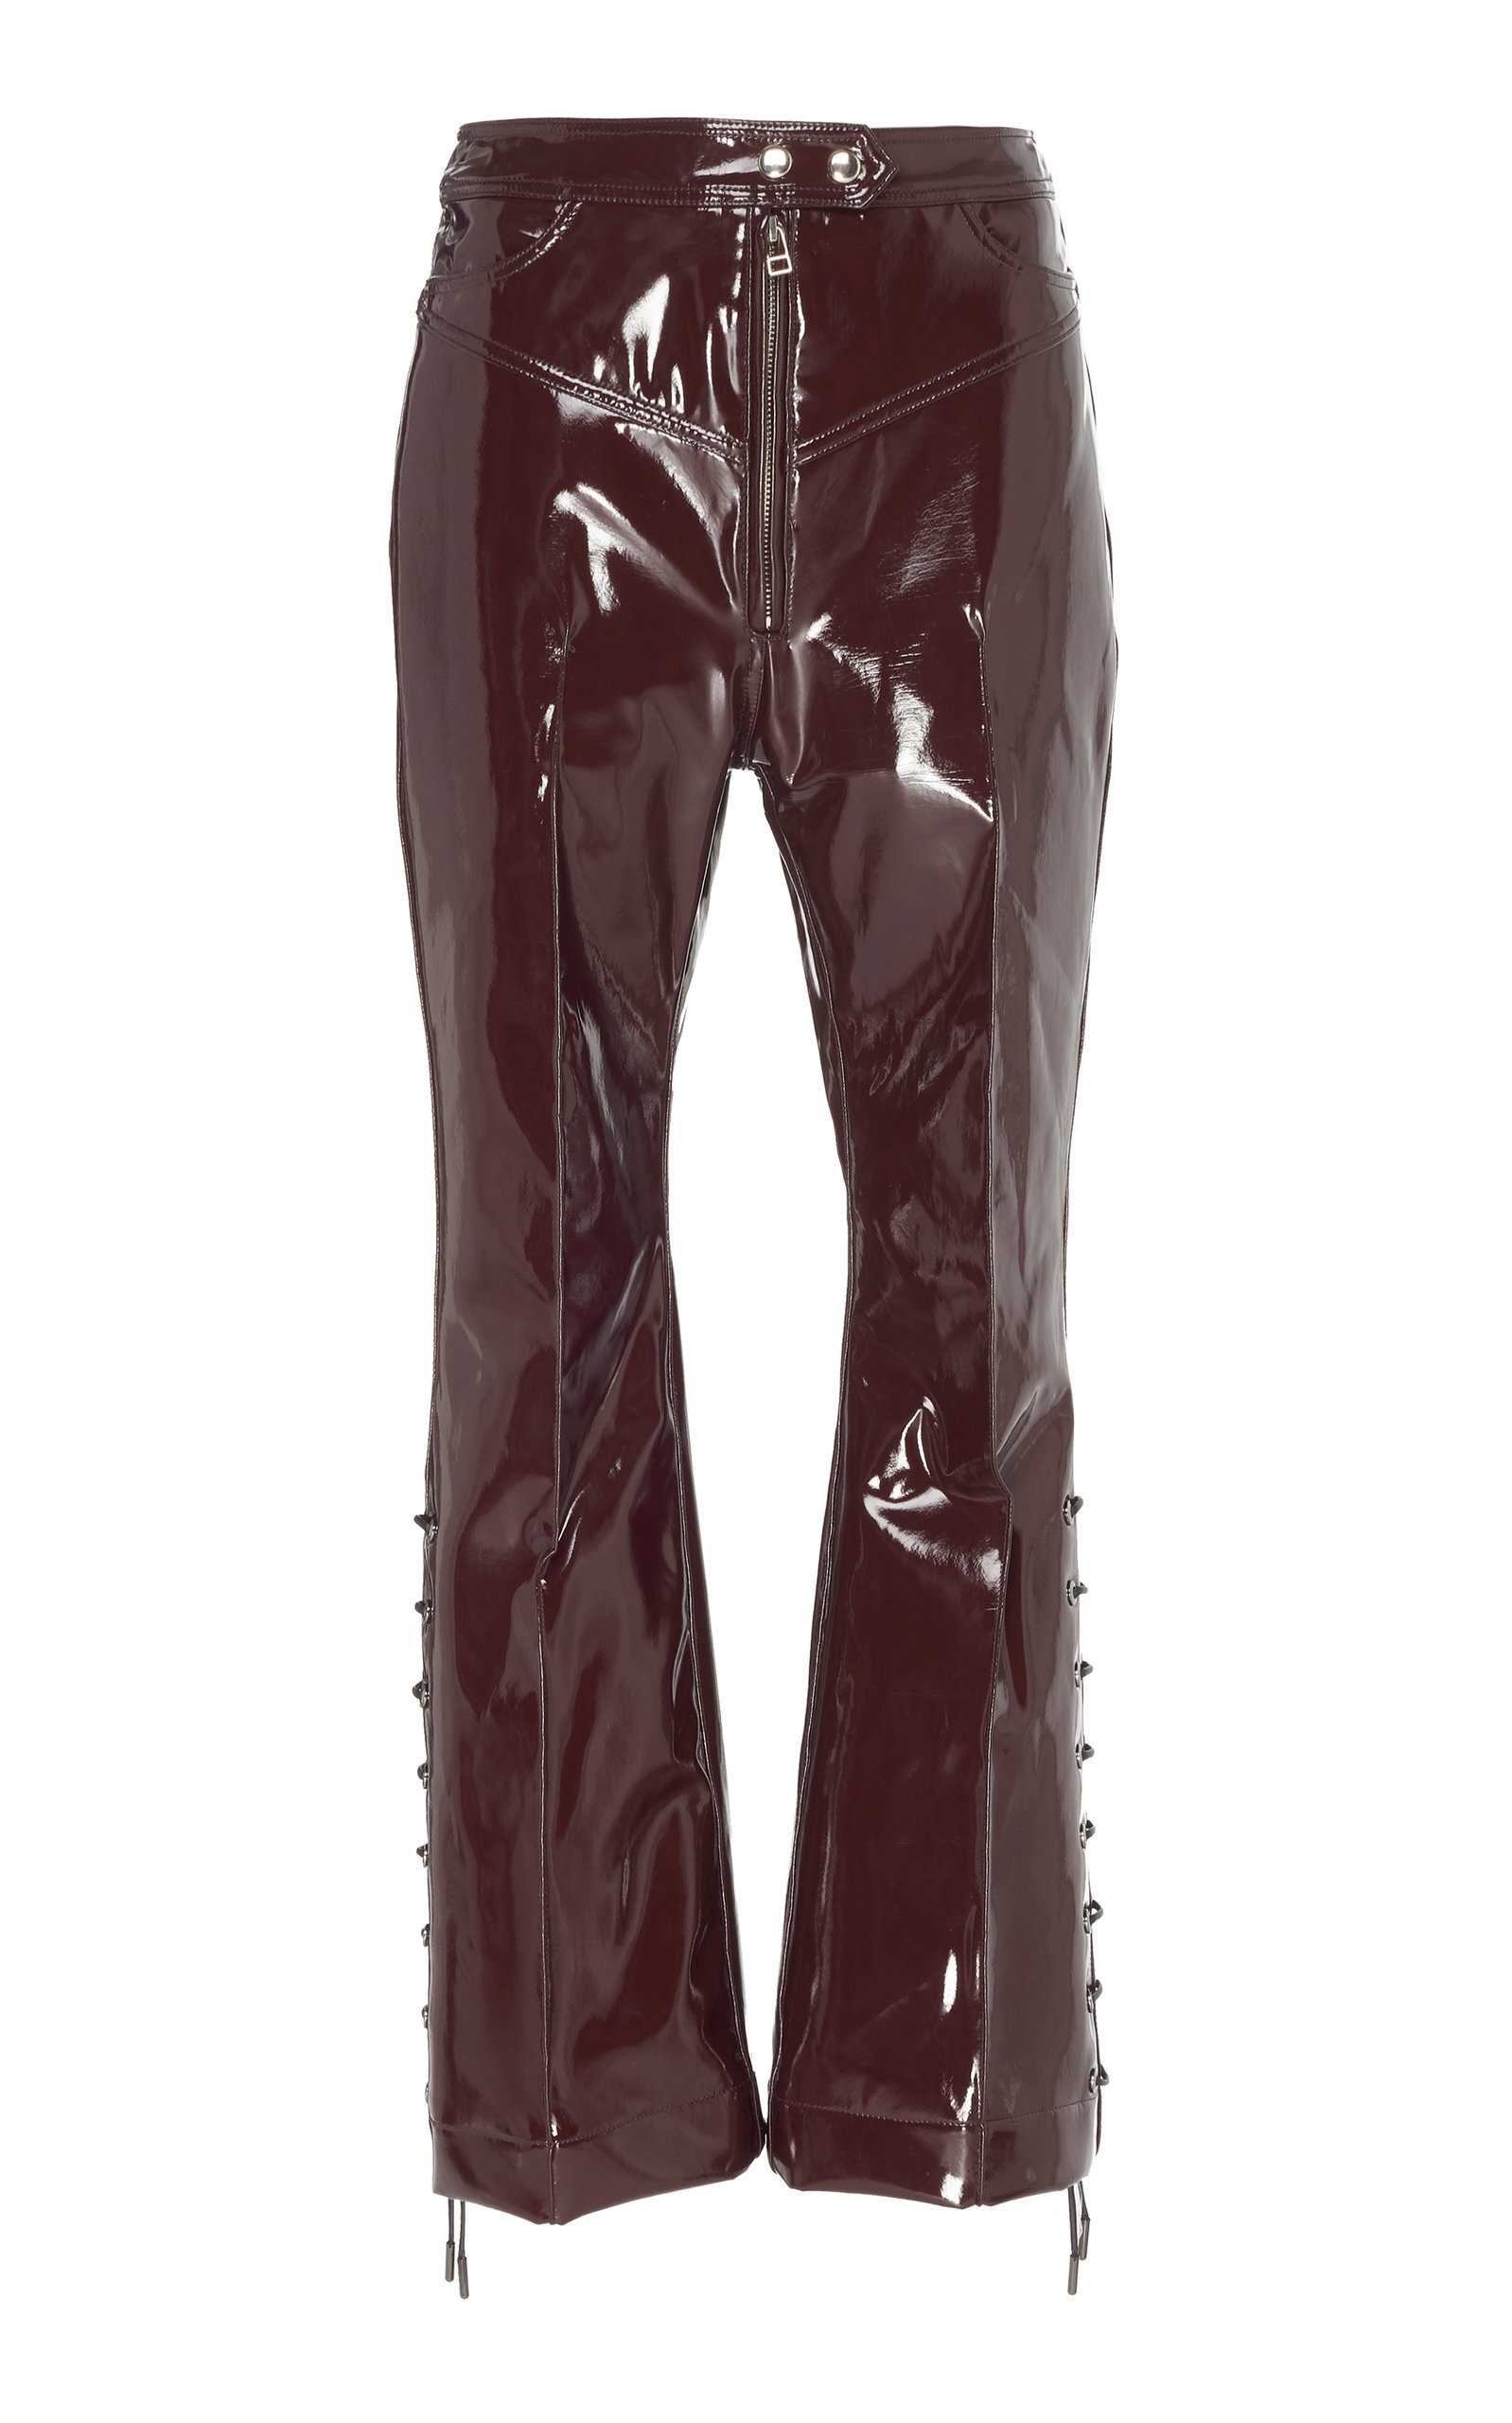 large_ellery-brown-westward-high-waisted-lace-up-vinyl-pants.jpg